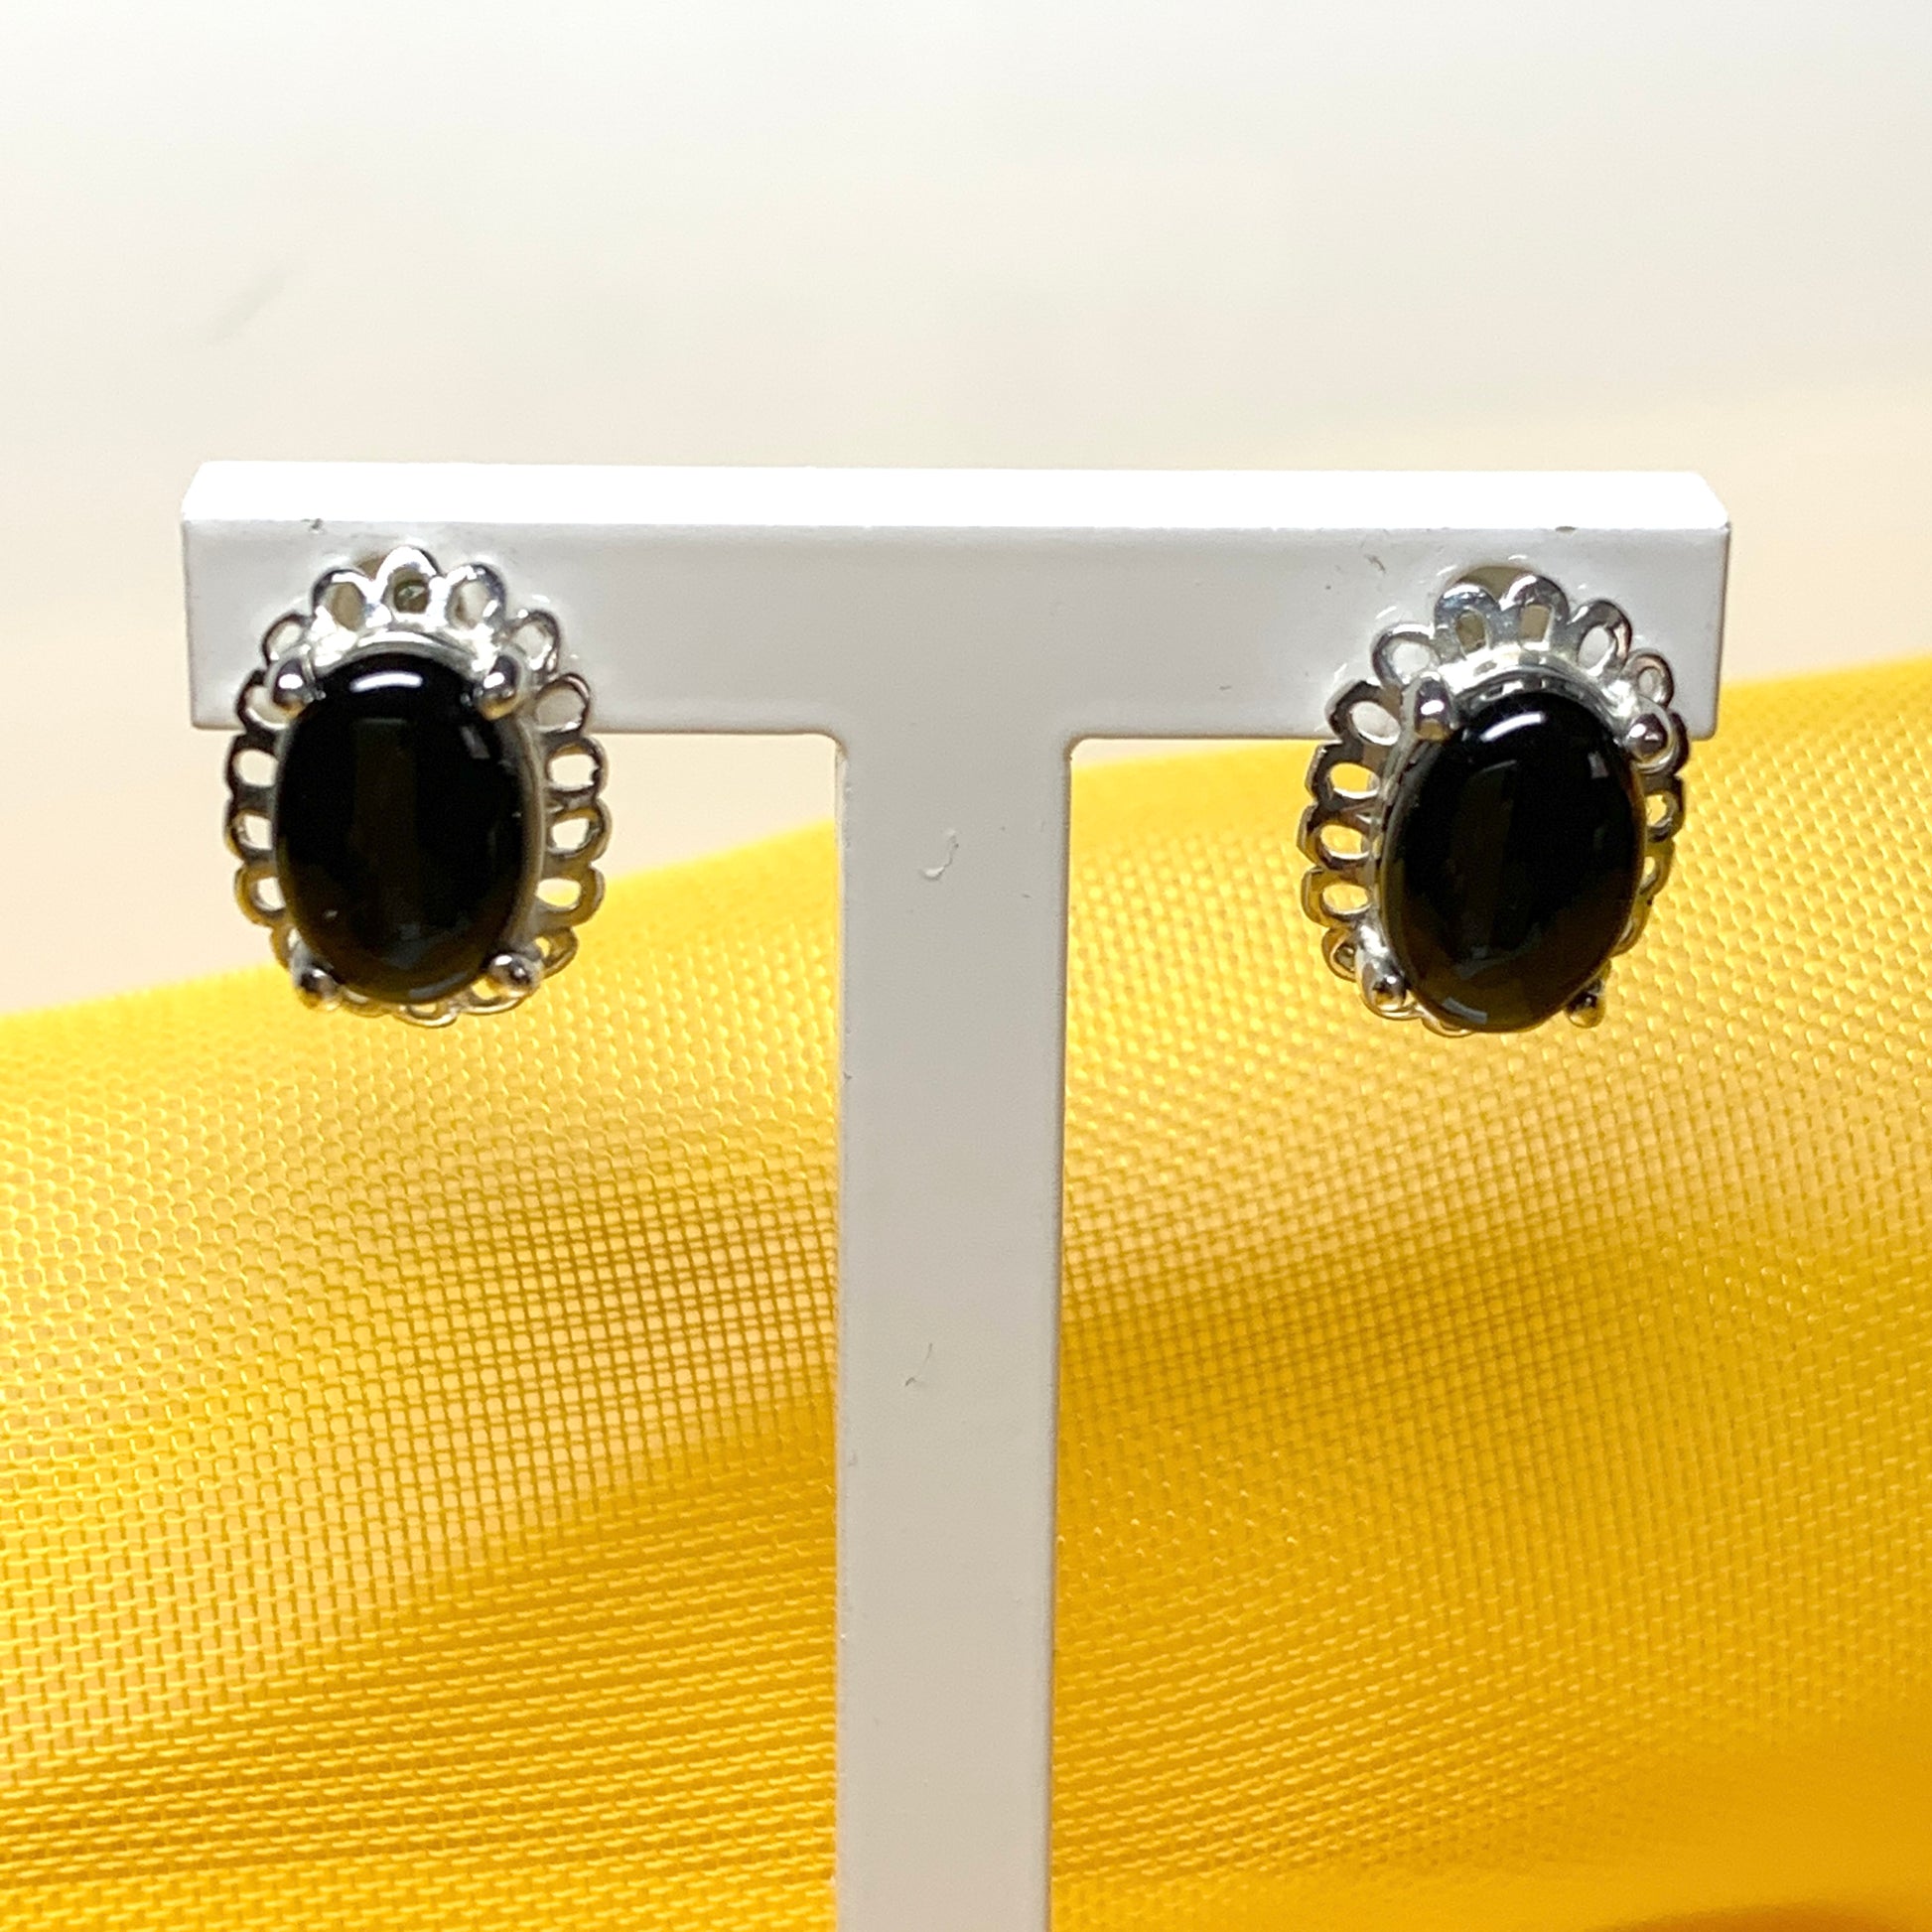 Black onyx oval sterling silver stud earrings